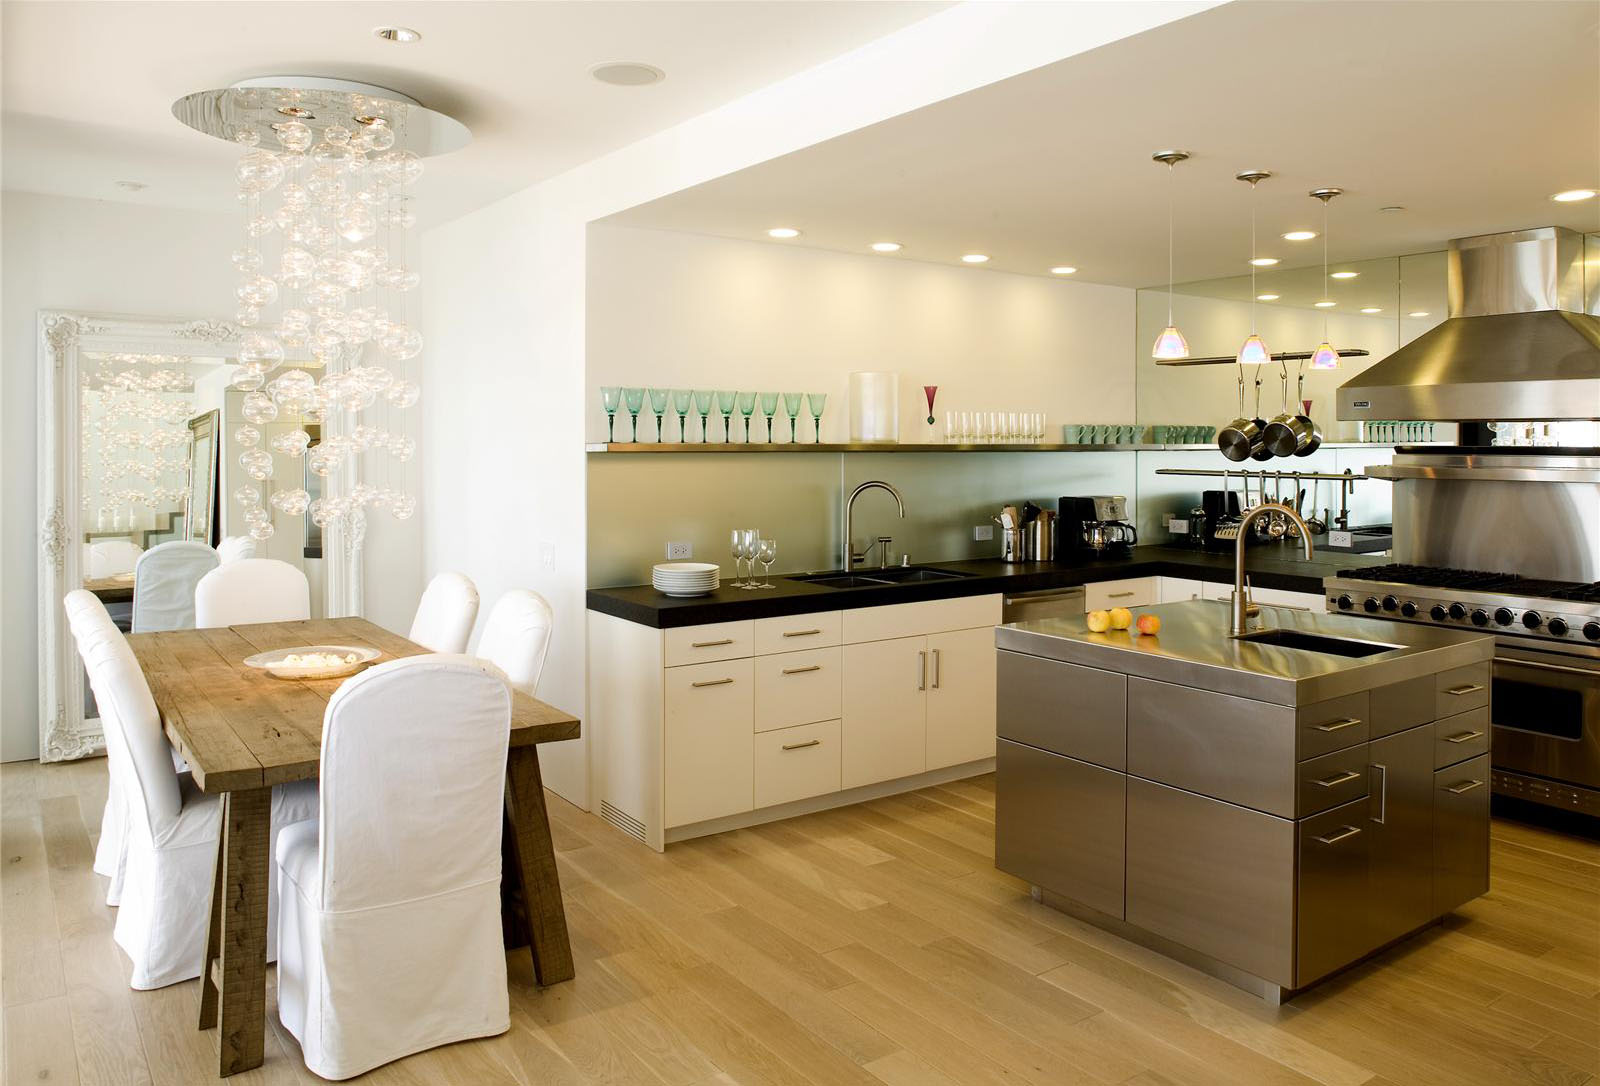 Open Contemporary Kitchen Design Ideas IDesignArch Interior